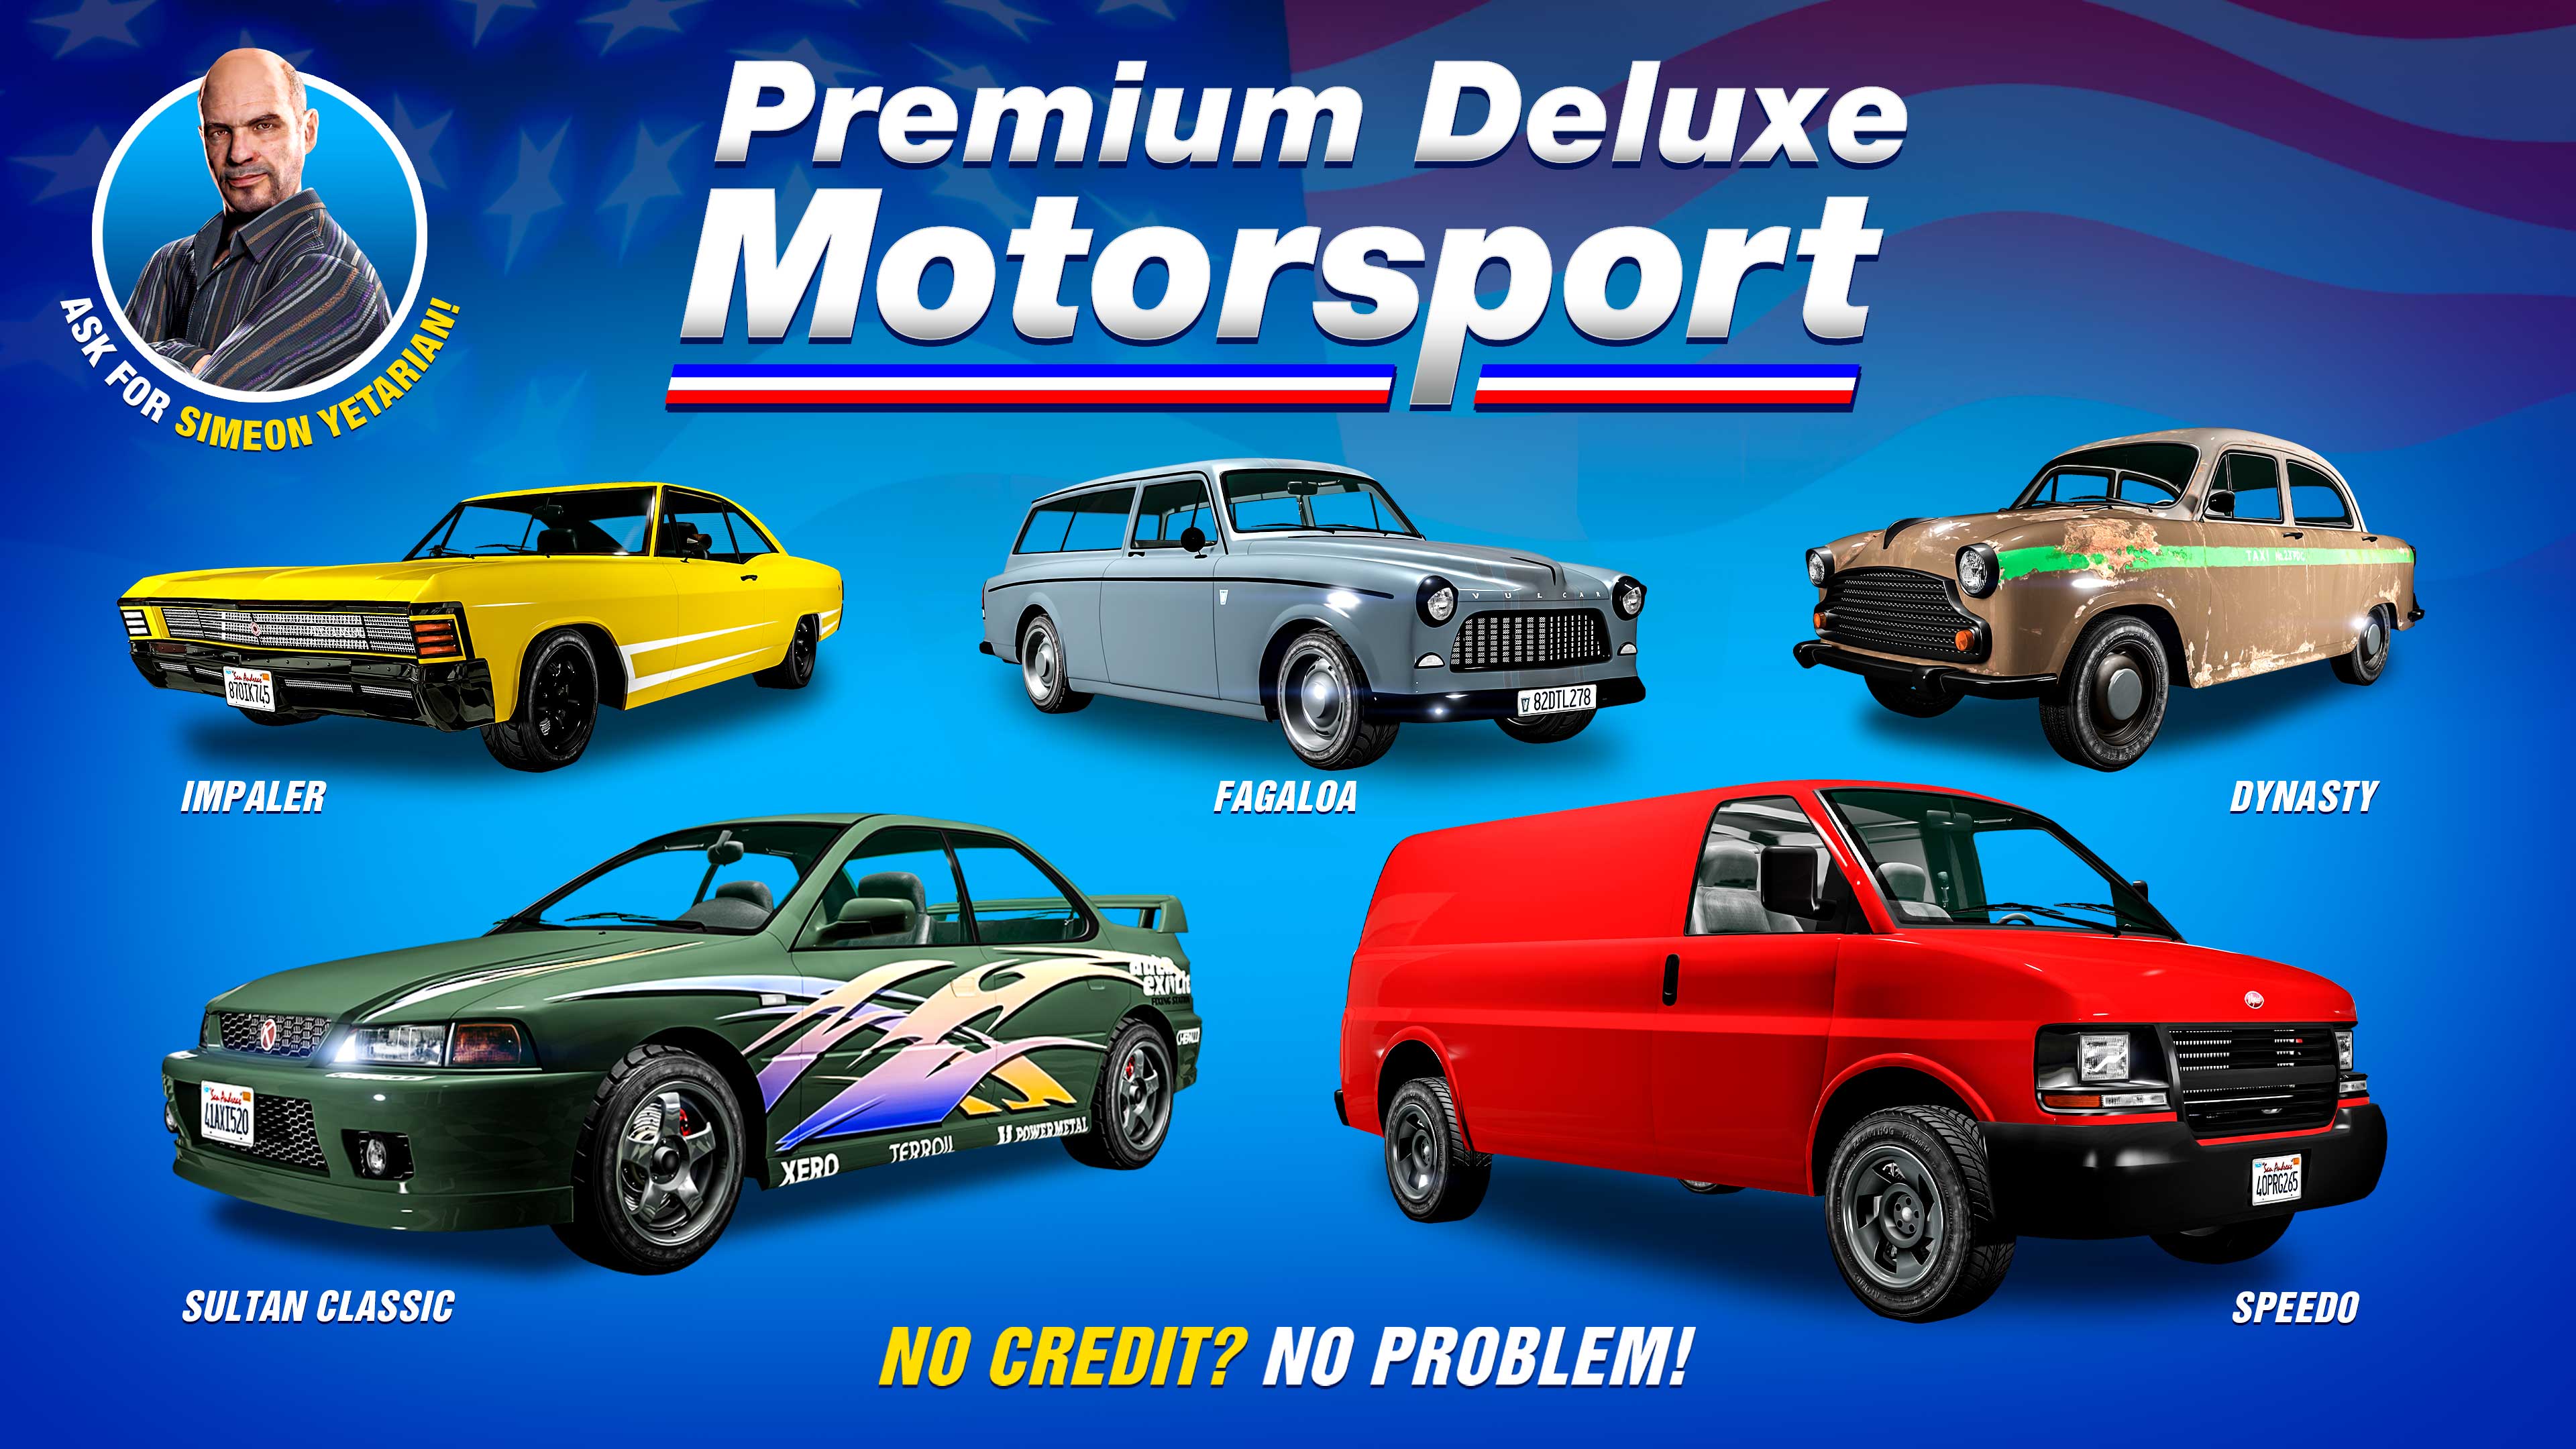 poster dell'autosalone Premium Deluxe Motorsport di Simeon